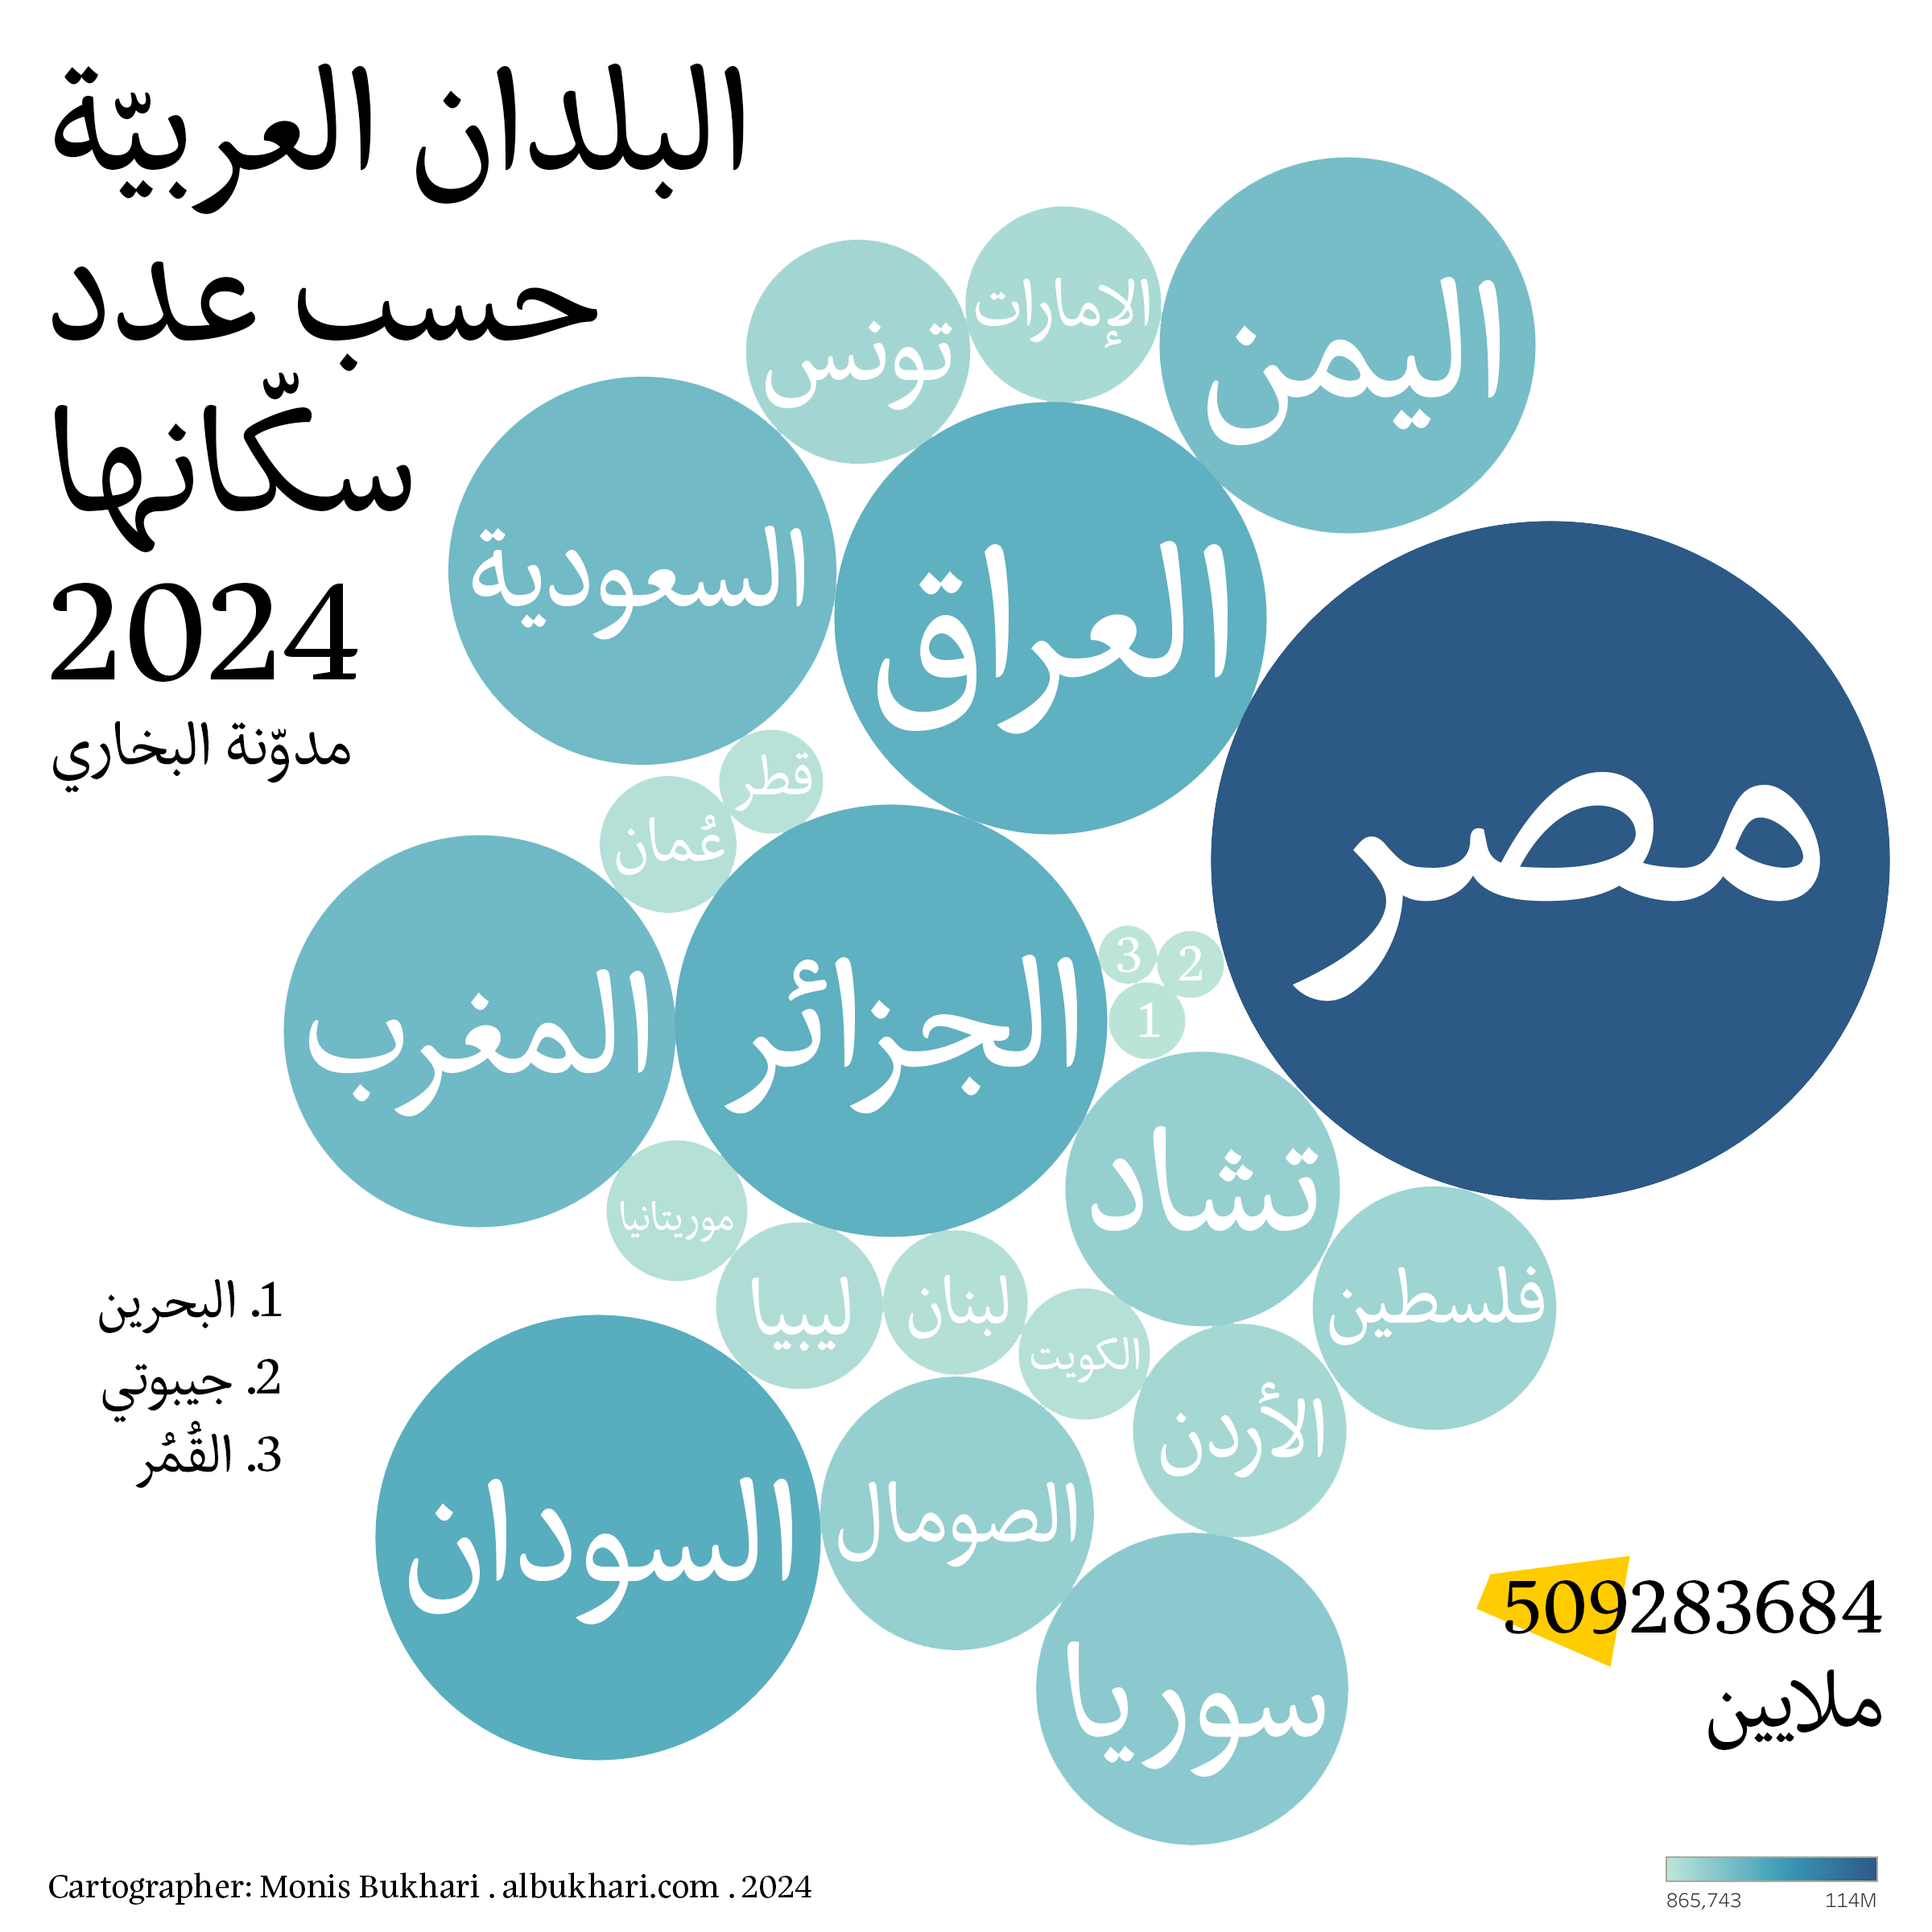 مخطّط البلدان العربية حسب عدد سكّانها سنة ٢٠٢٤